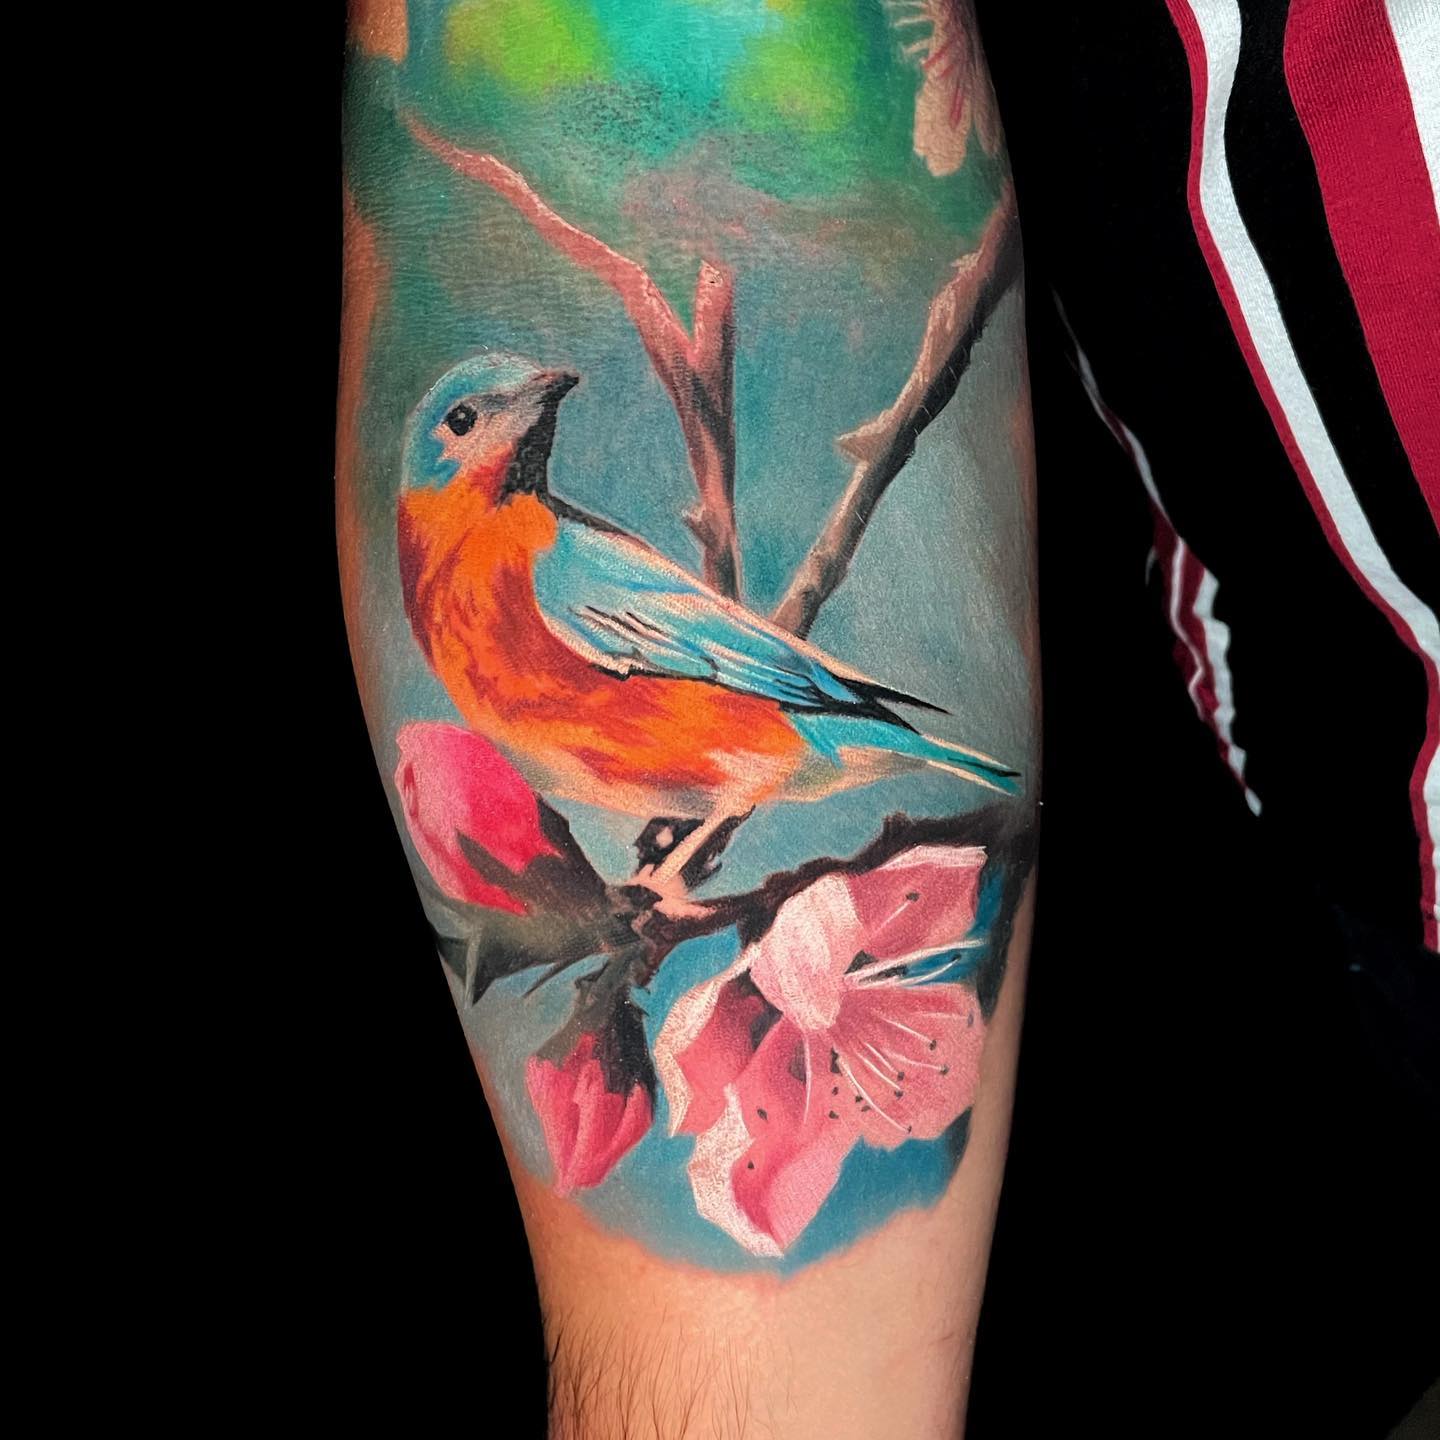 Tatuaje de flor de cerezo creativo y colorido.